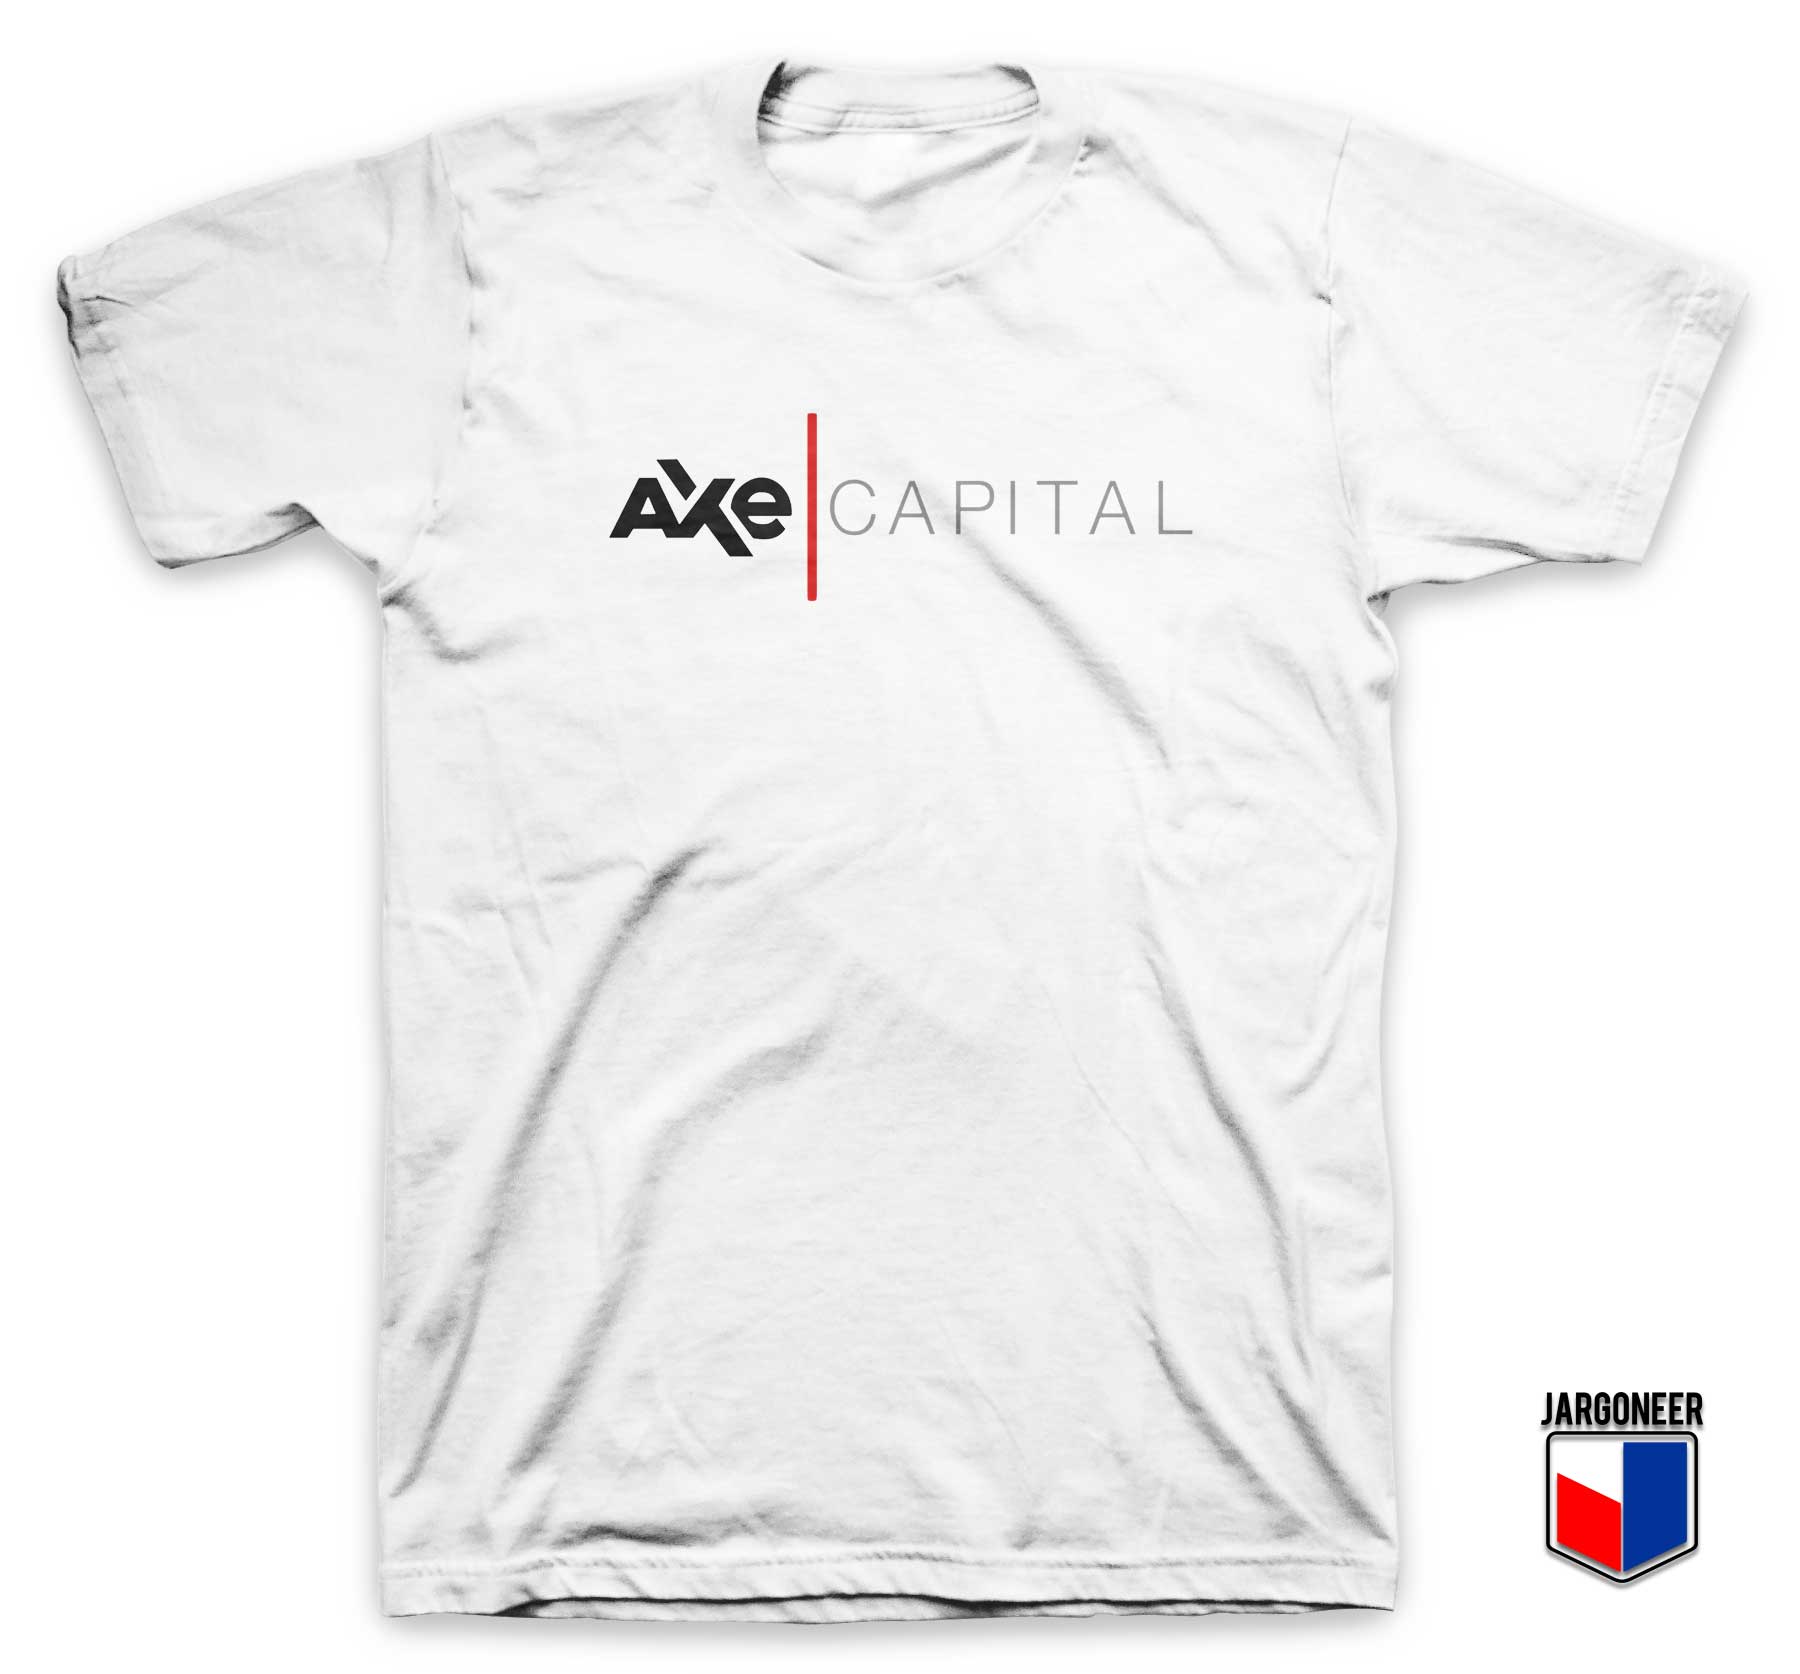 Billion Axe Capital T Shirt - Shop Unique Graphic Cool Shirt Designs